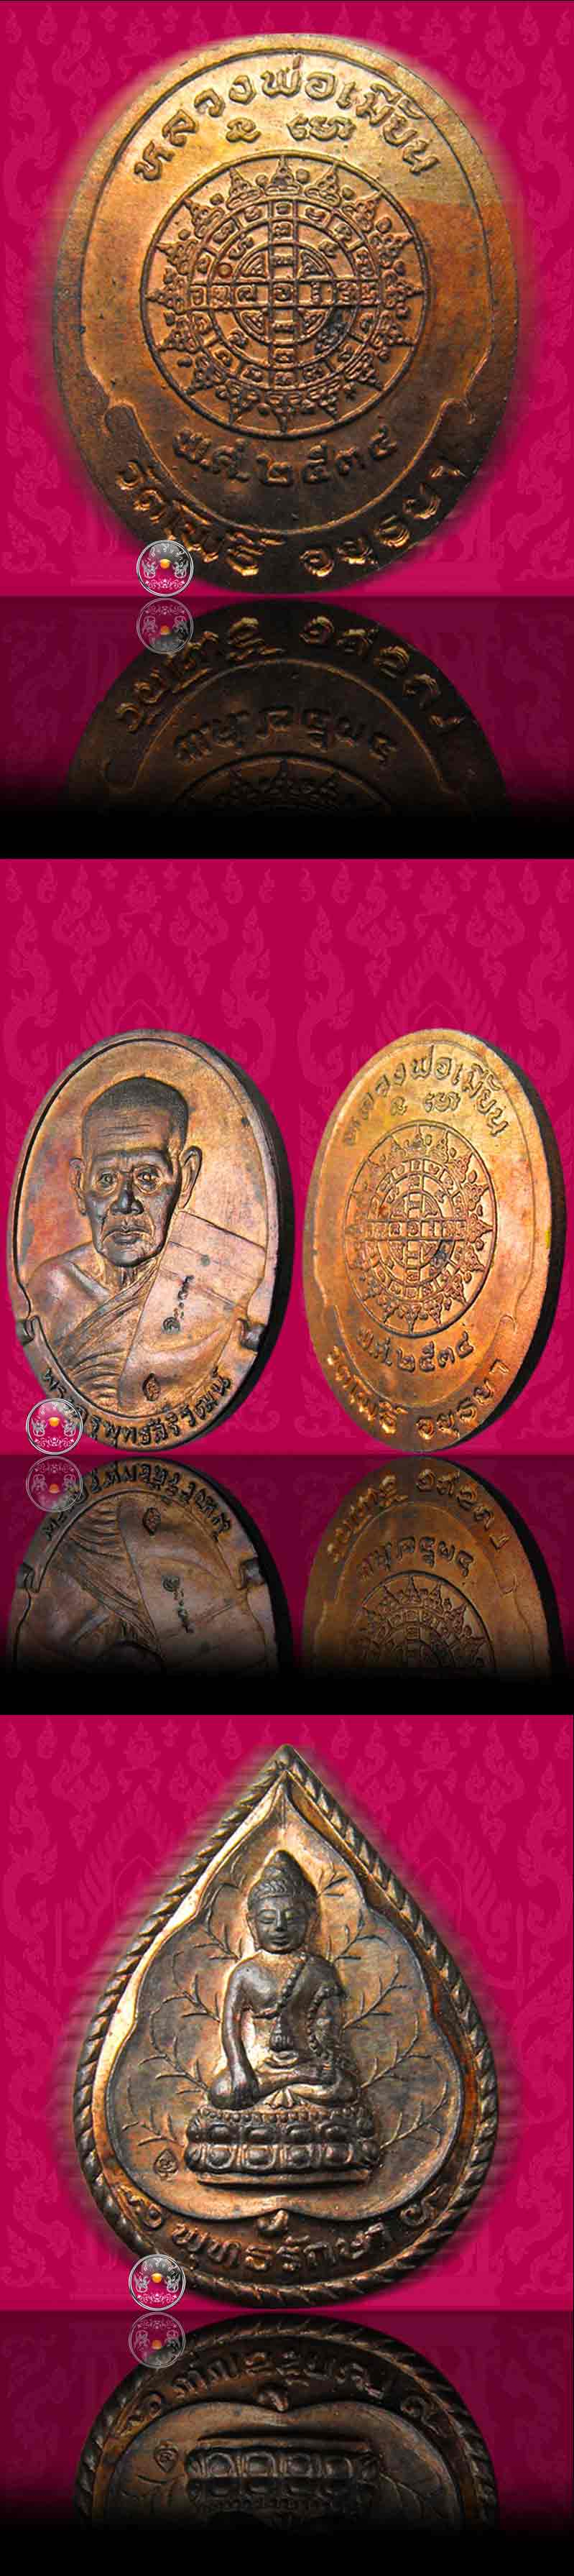 เหรียญนวะโลหะรุ่นแรก (ชนวนพระกริ่งสังฆราชแพฯ) หลวงพ่อเมี้ยน วัดโพธิ์กบเจา จ.อยุธยา ปี 2534 (ครบชุด) - 3